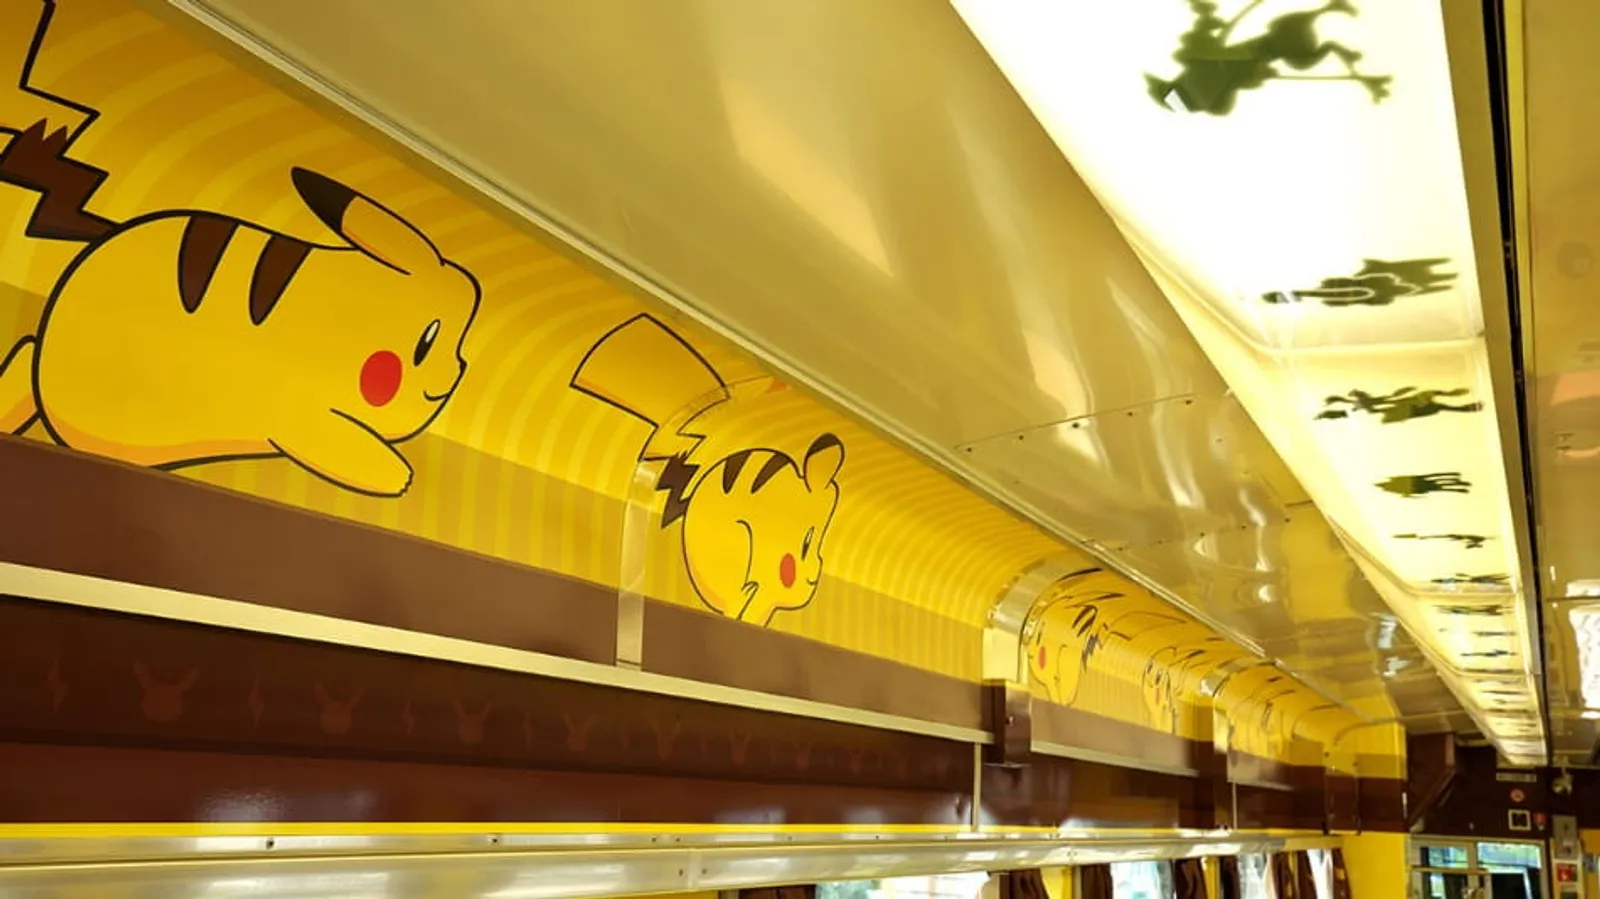 Naik Kereta 'POKEMON With You', Penuh Hiasan Pikachu Super Gemas!